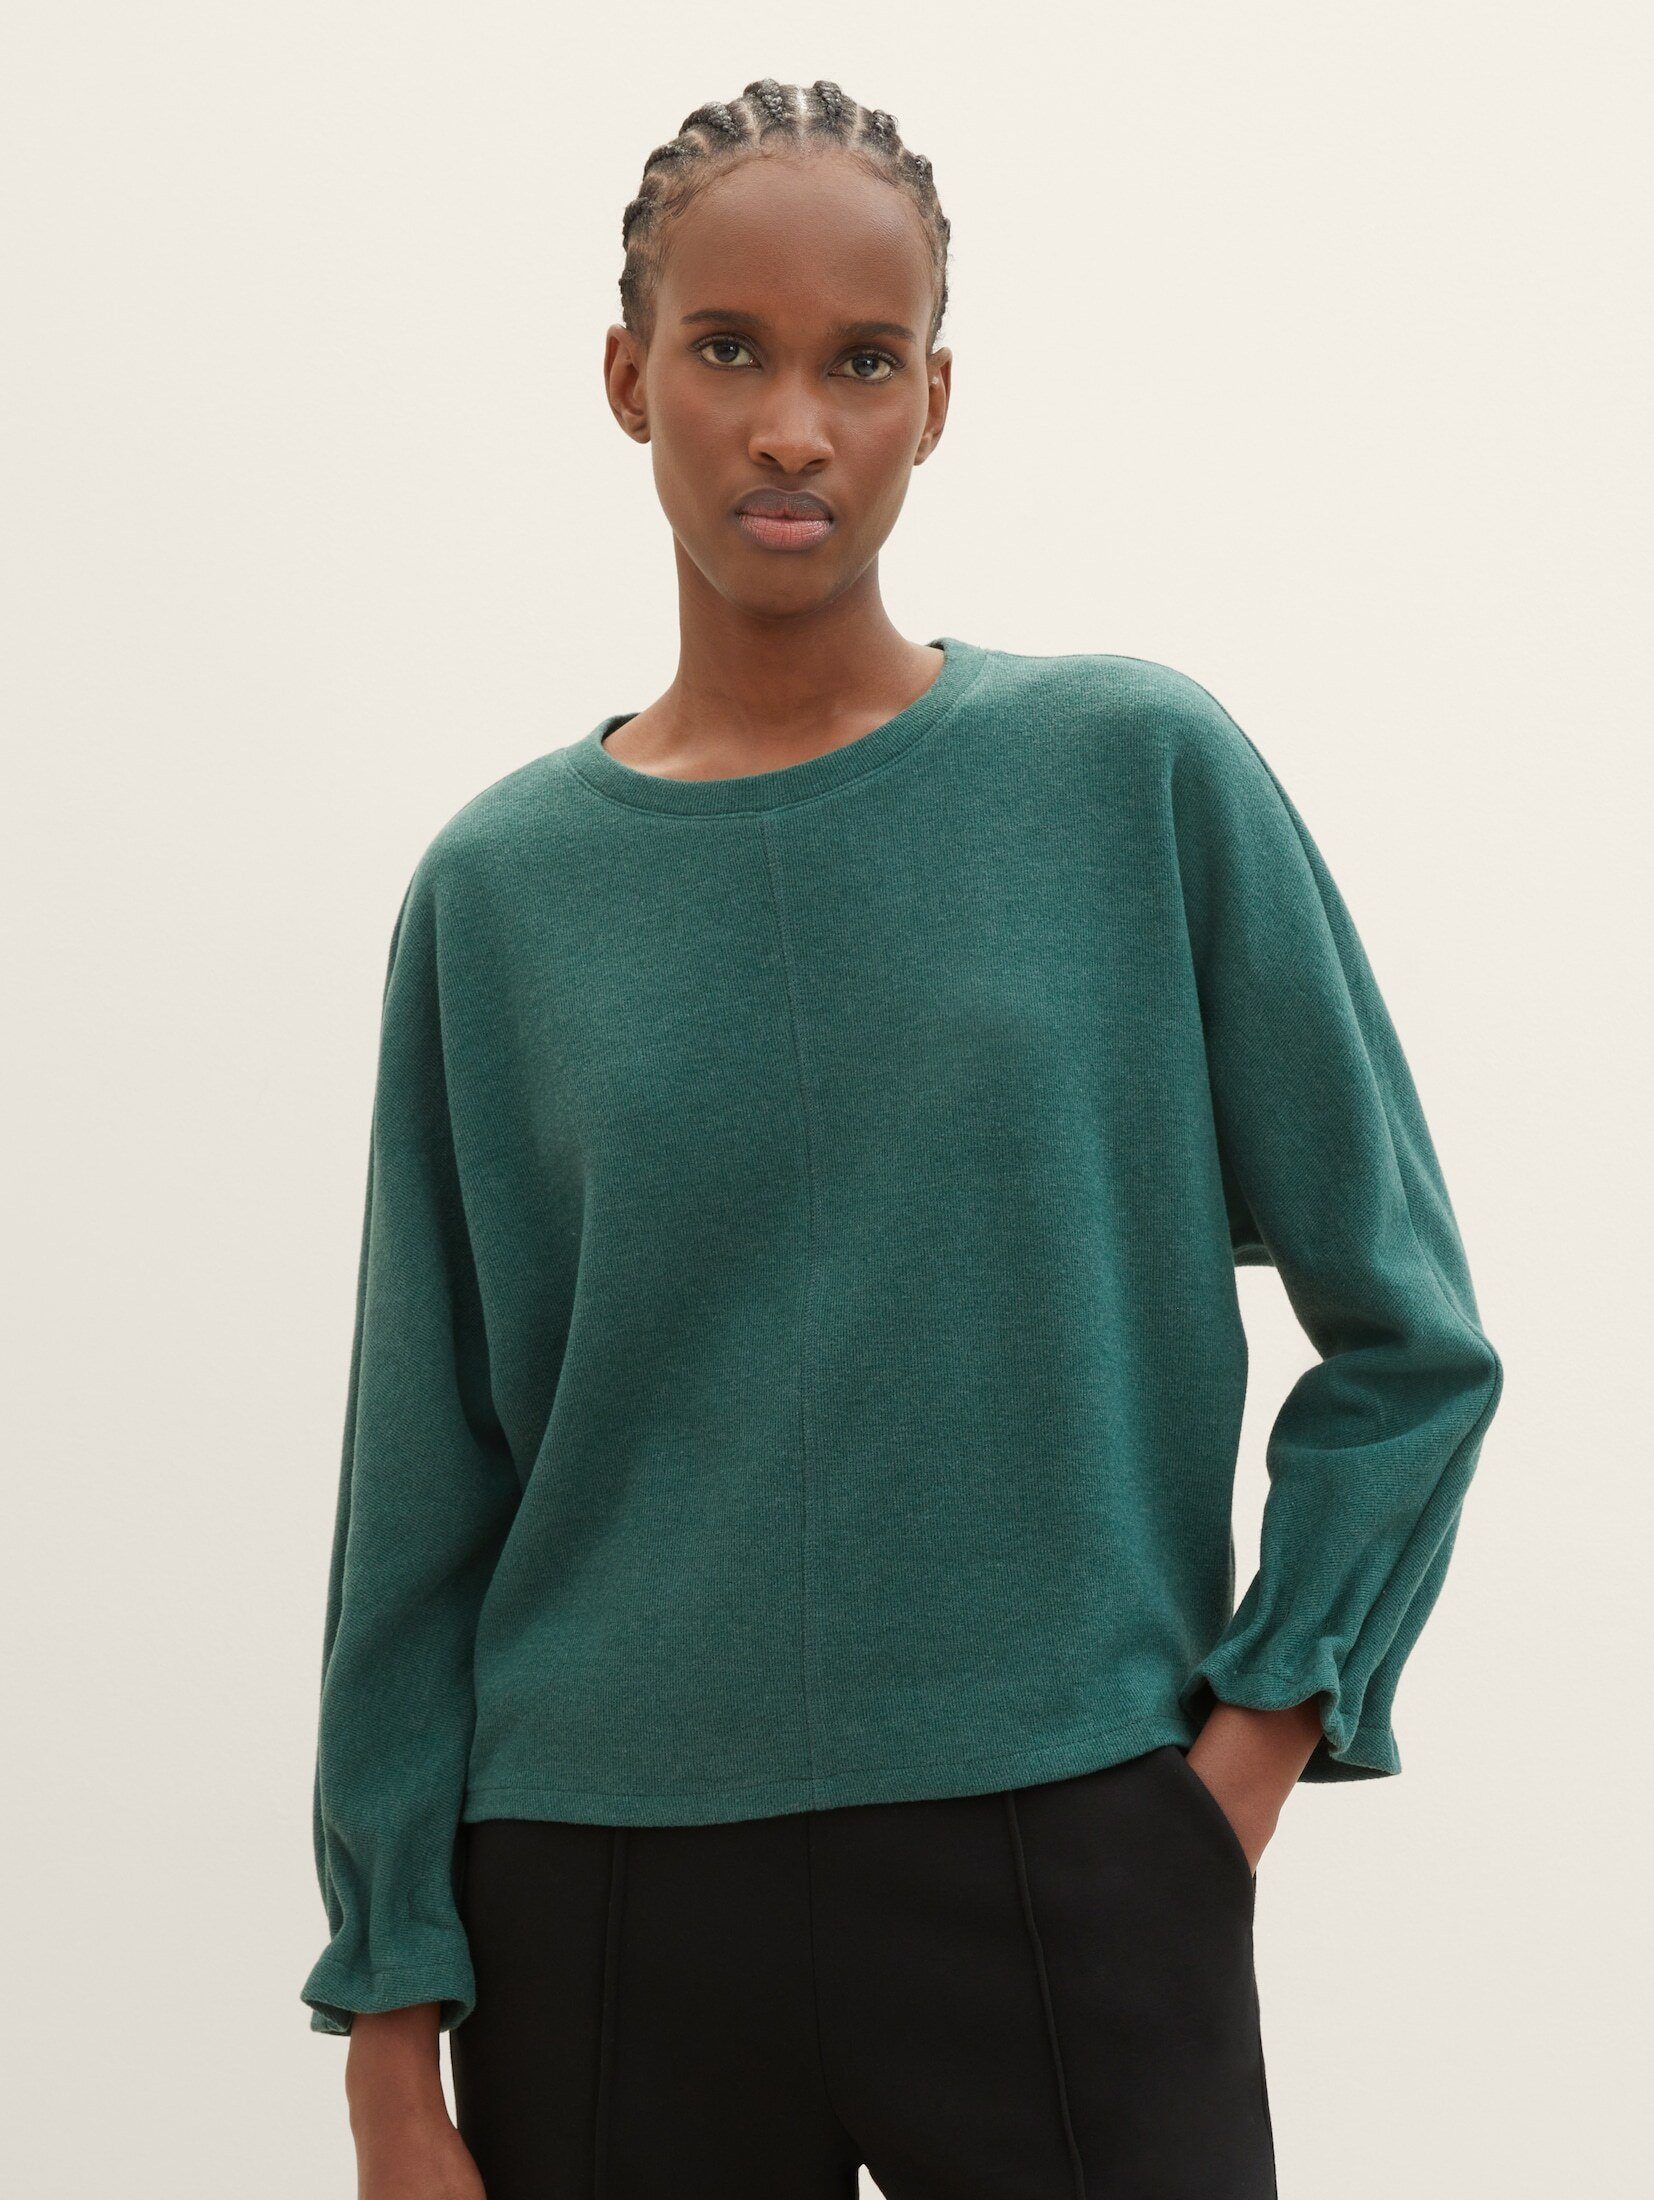 dust green Sweatshirt melange Denim Sweater TAILOR mit TOM Fledermausärmeln